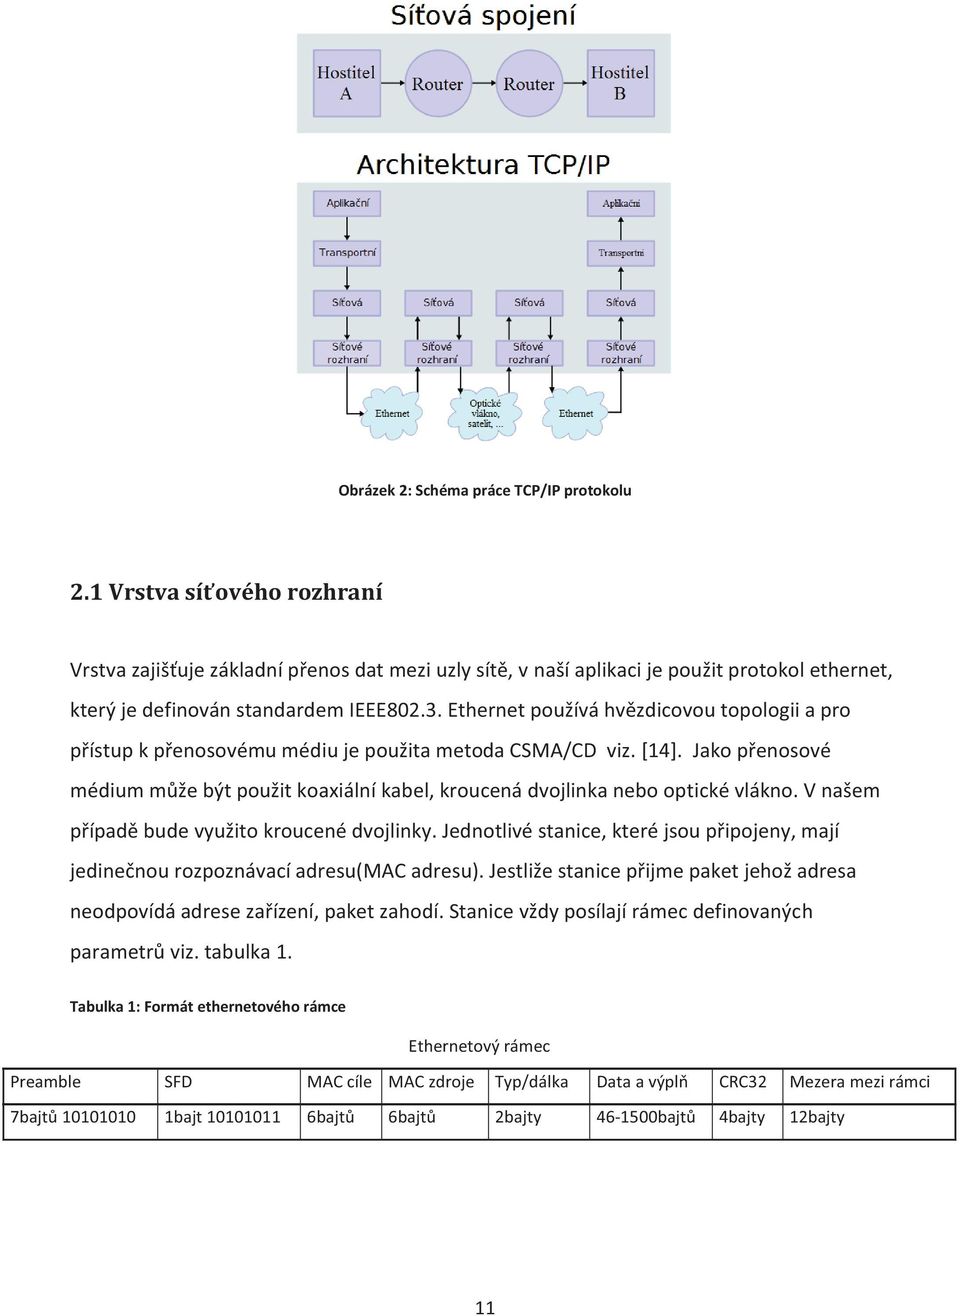 Ethernet používá hvězdicovou topologii a pro přístup k přenosovému médiu je použita metoda CSMA/CD viz. [14].